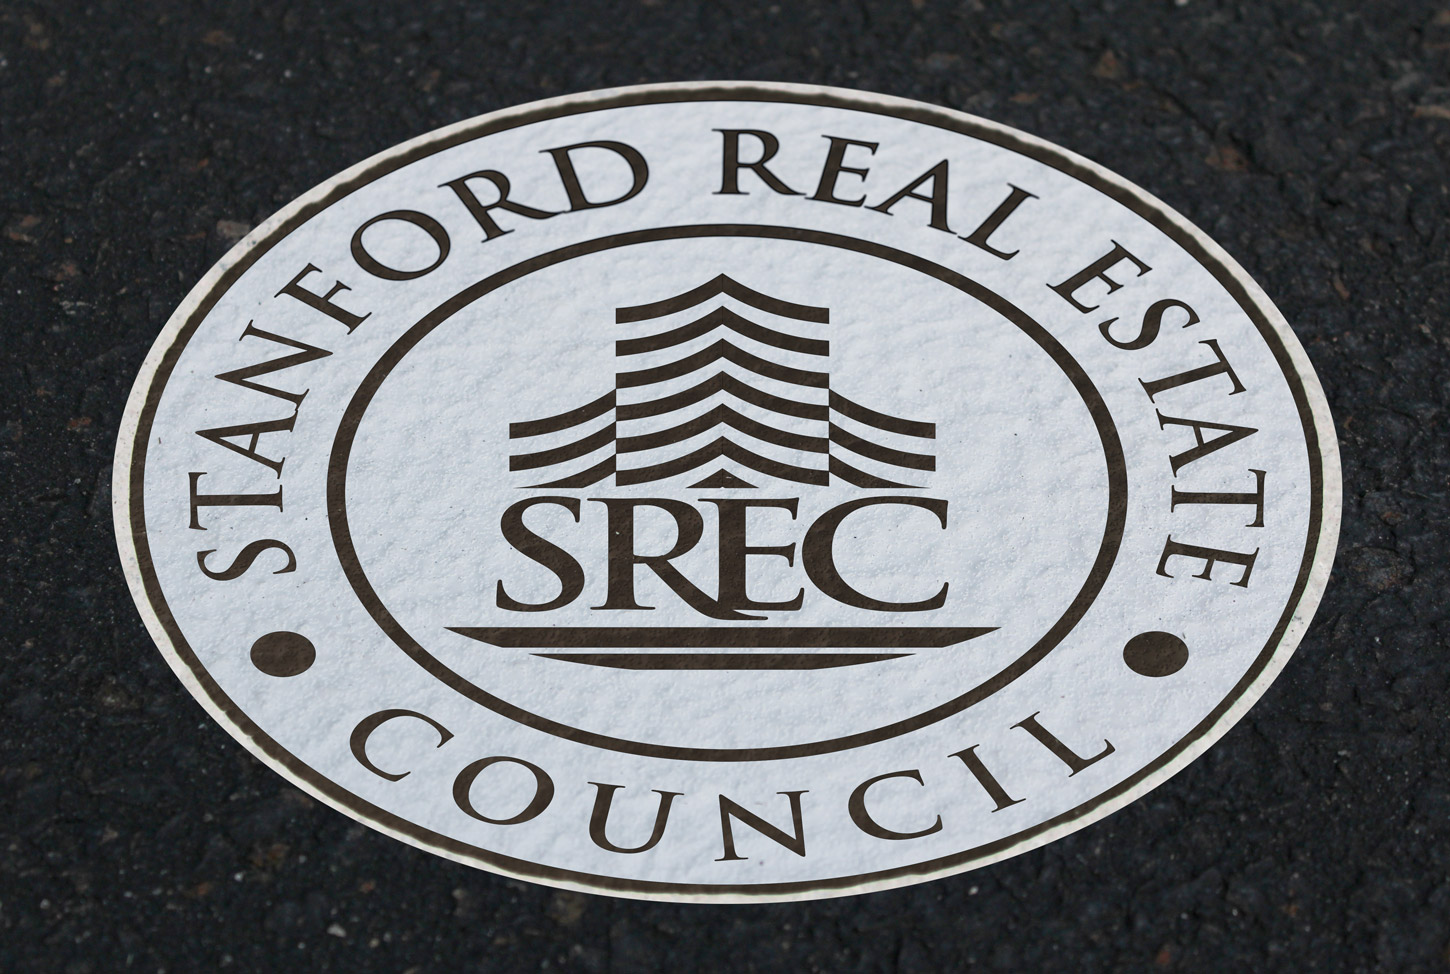 Stanford Real Estate Council Floor Decal on Asphalt